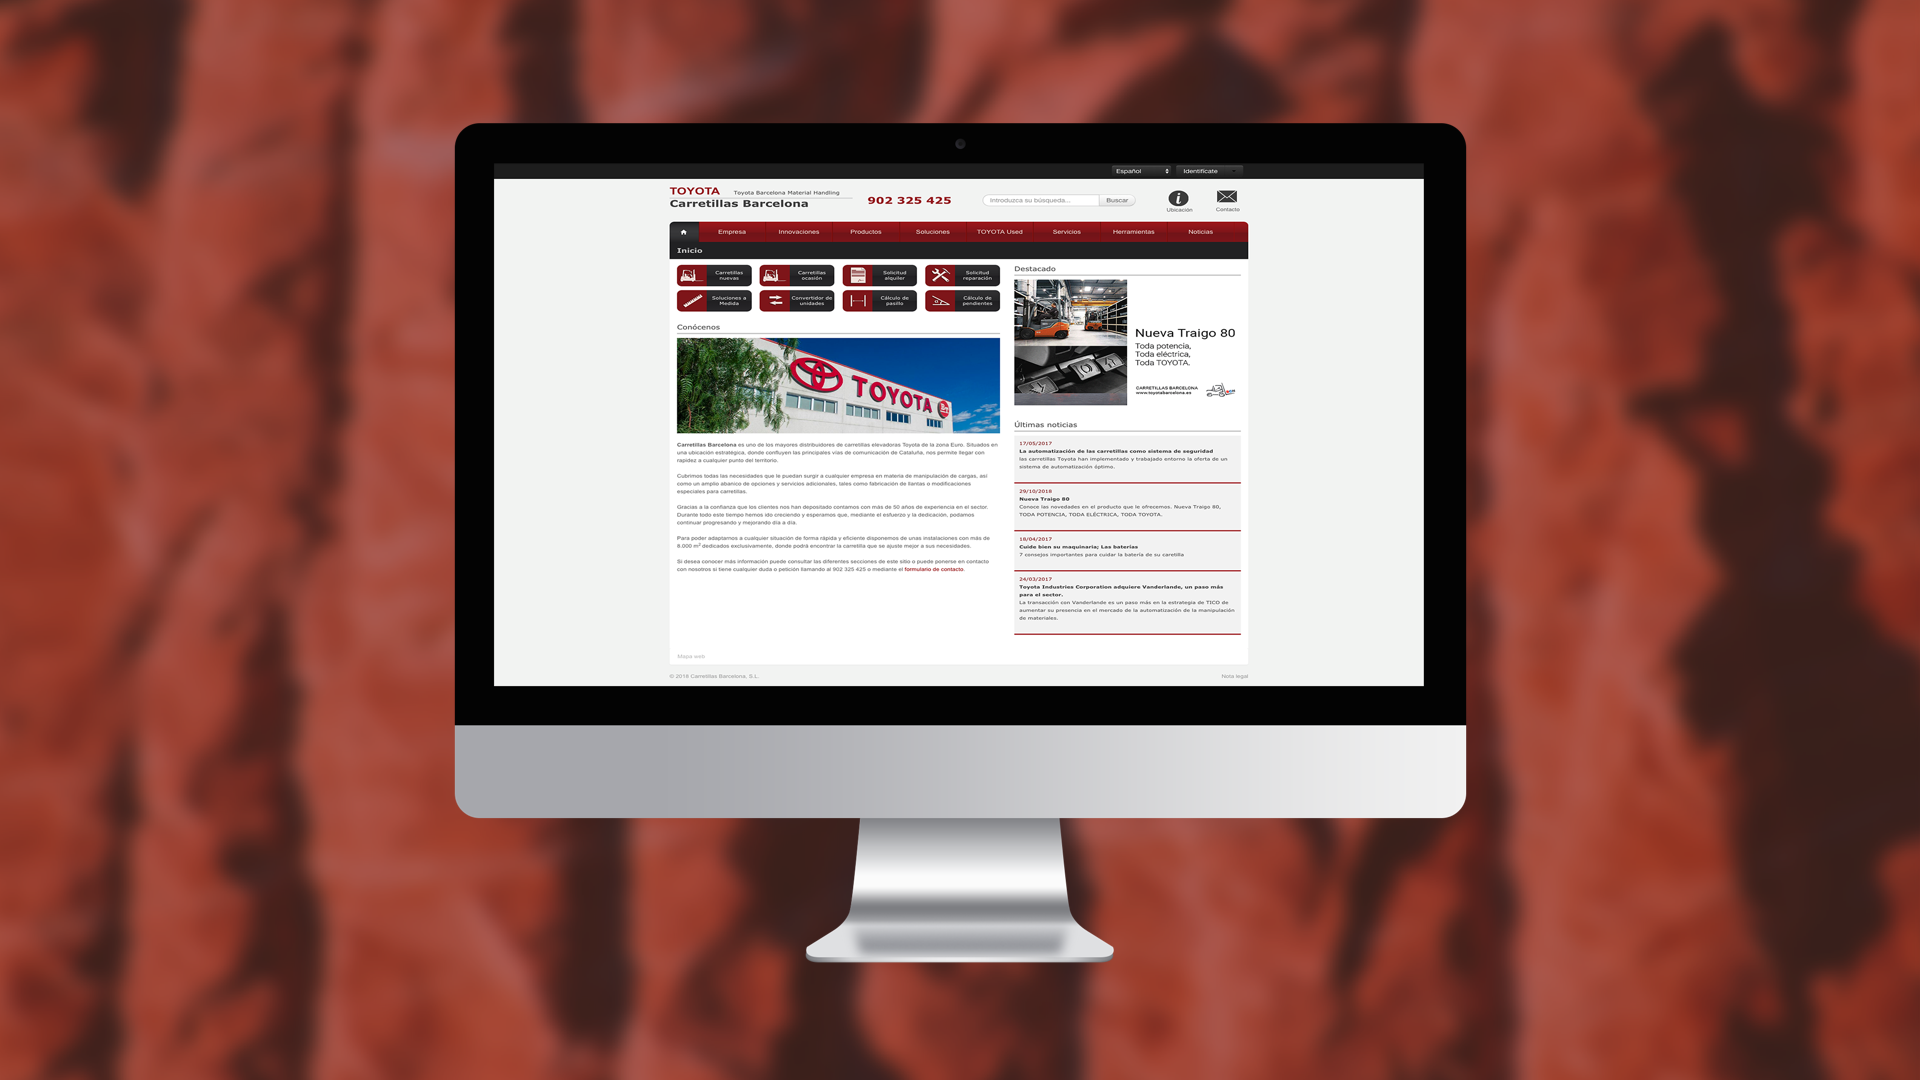 Web design of a corporate web portal